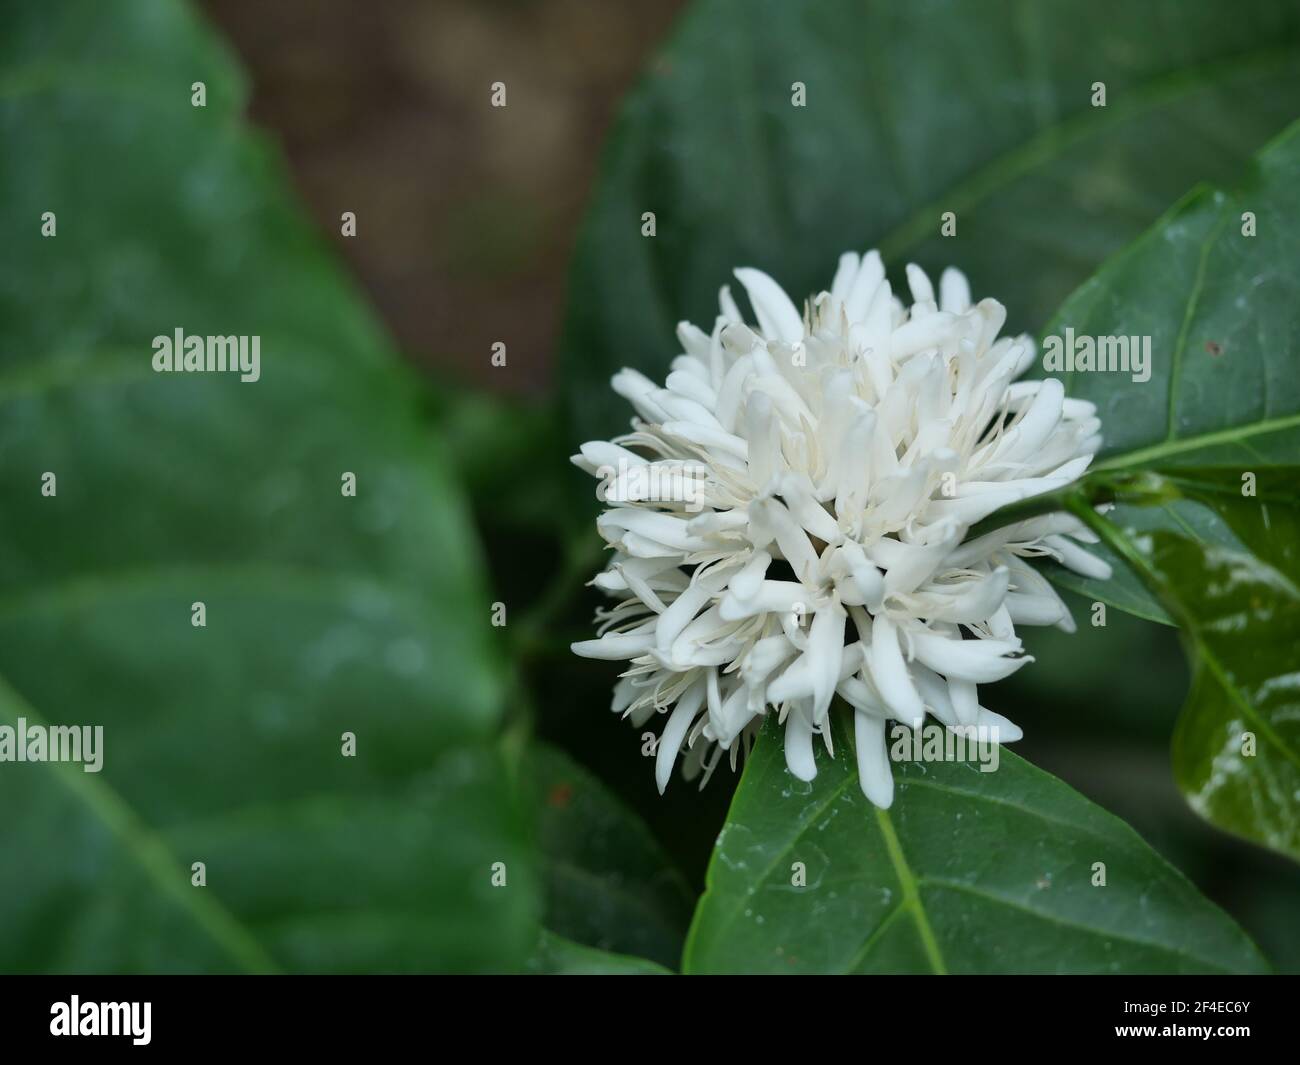 Robusta Kaffeeblüte auf Baumpflanze mit grünem Blatt mit schwarzer Farbe im Hintergrund. Blütenblätter und weiße Staubgefäße blühender Blumen Stockfoto